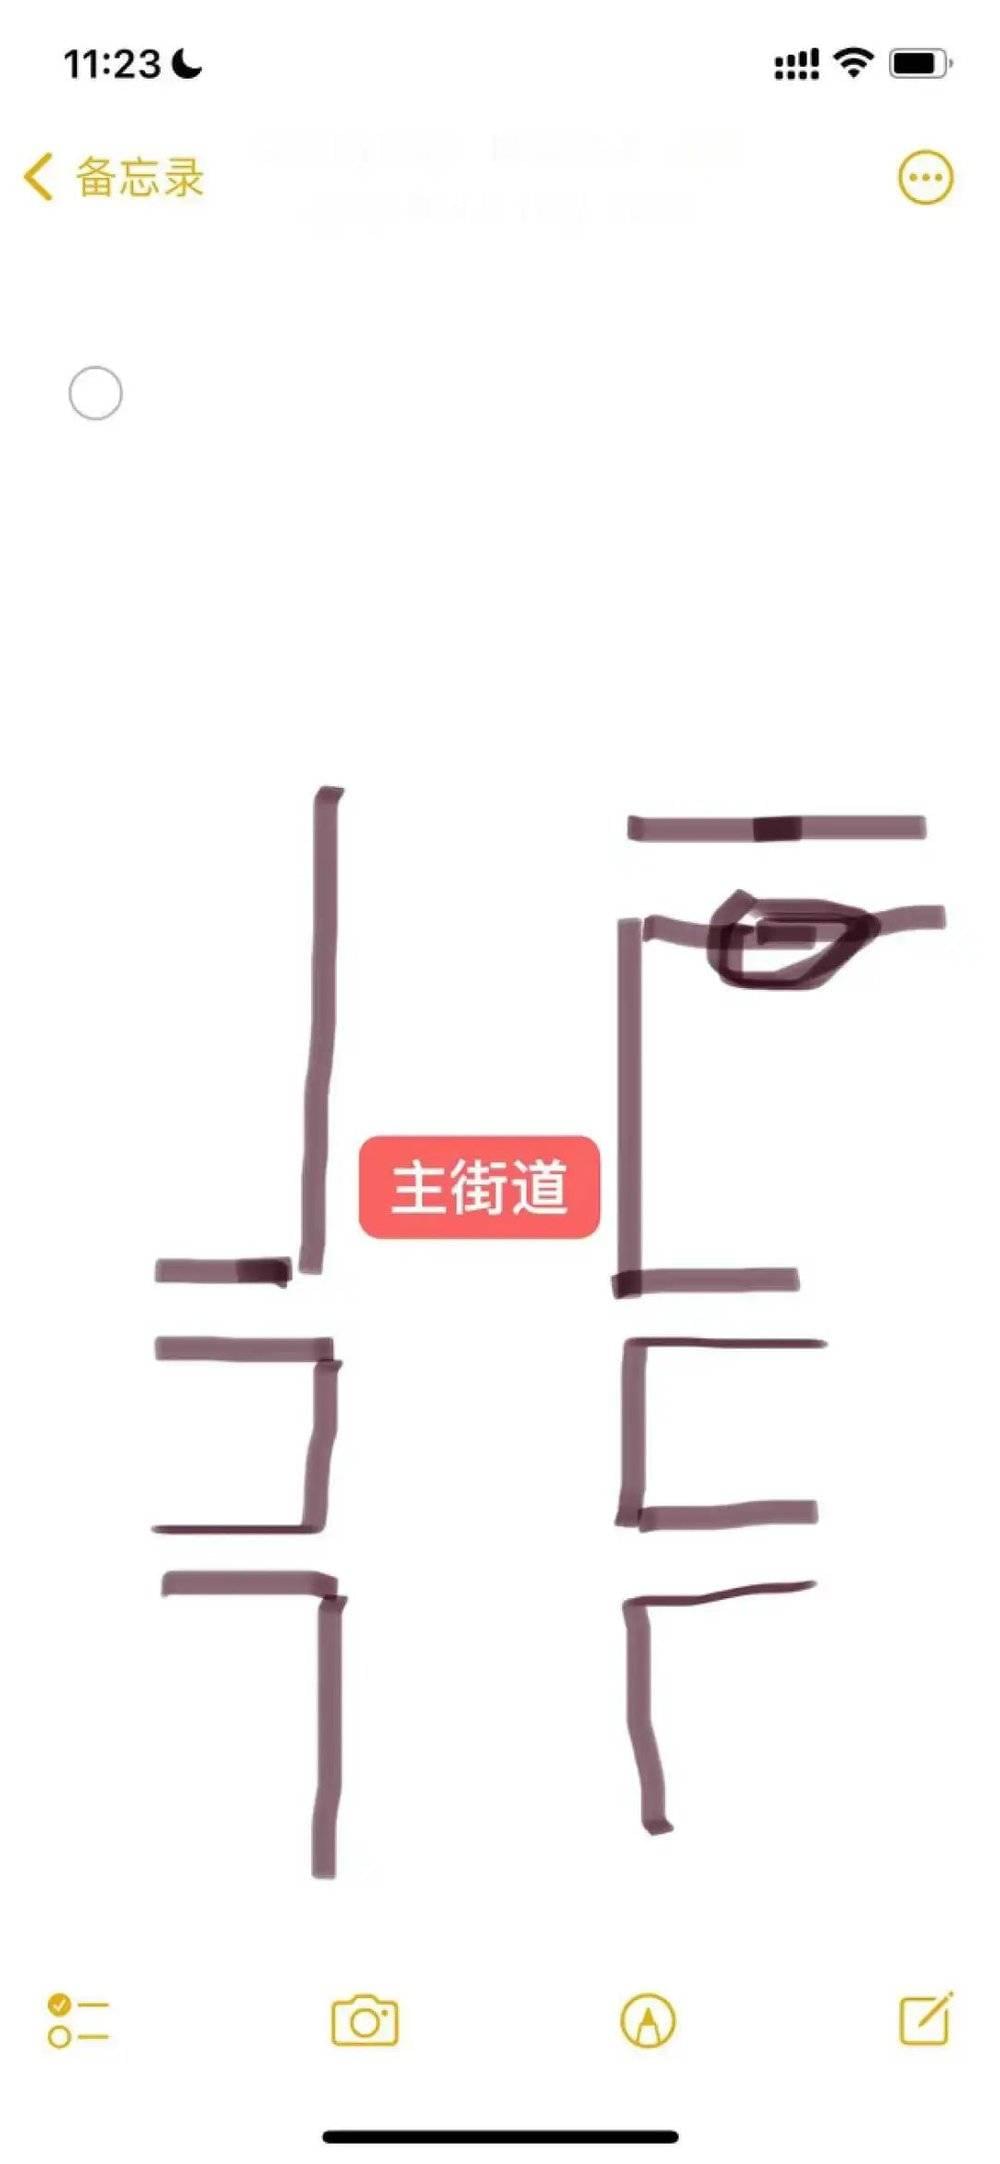 受访者供图：林肥米店铺手绘选址图<br>